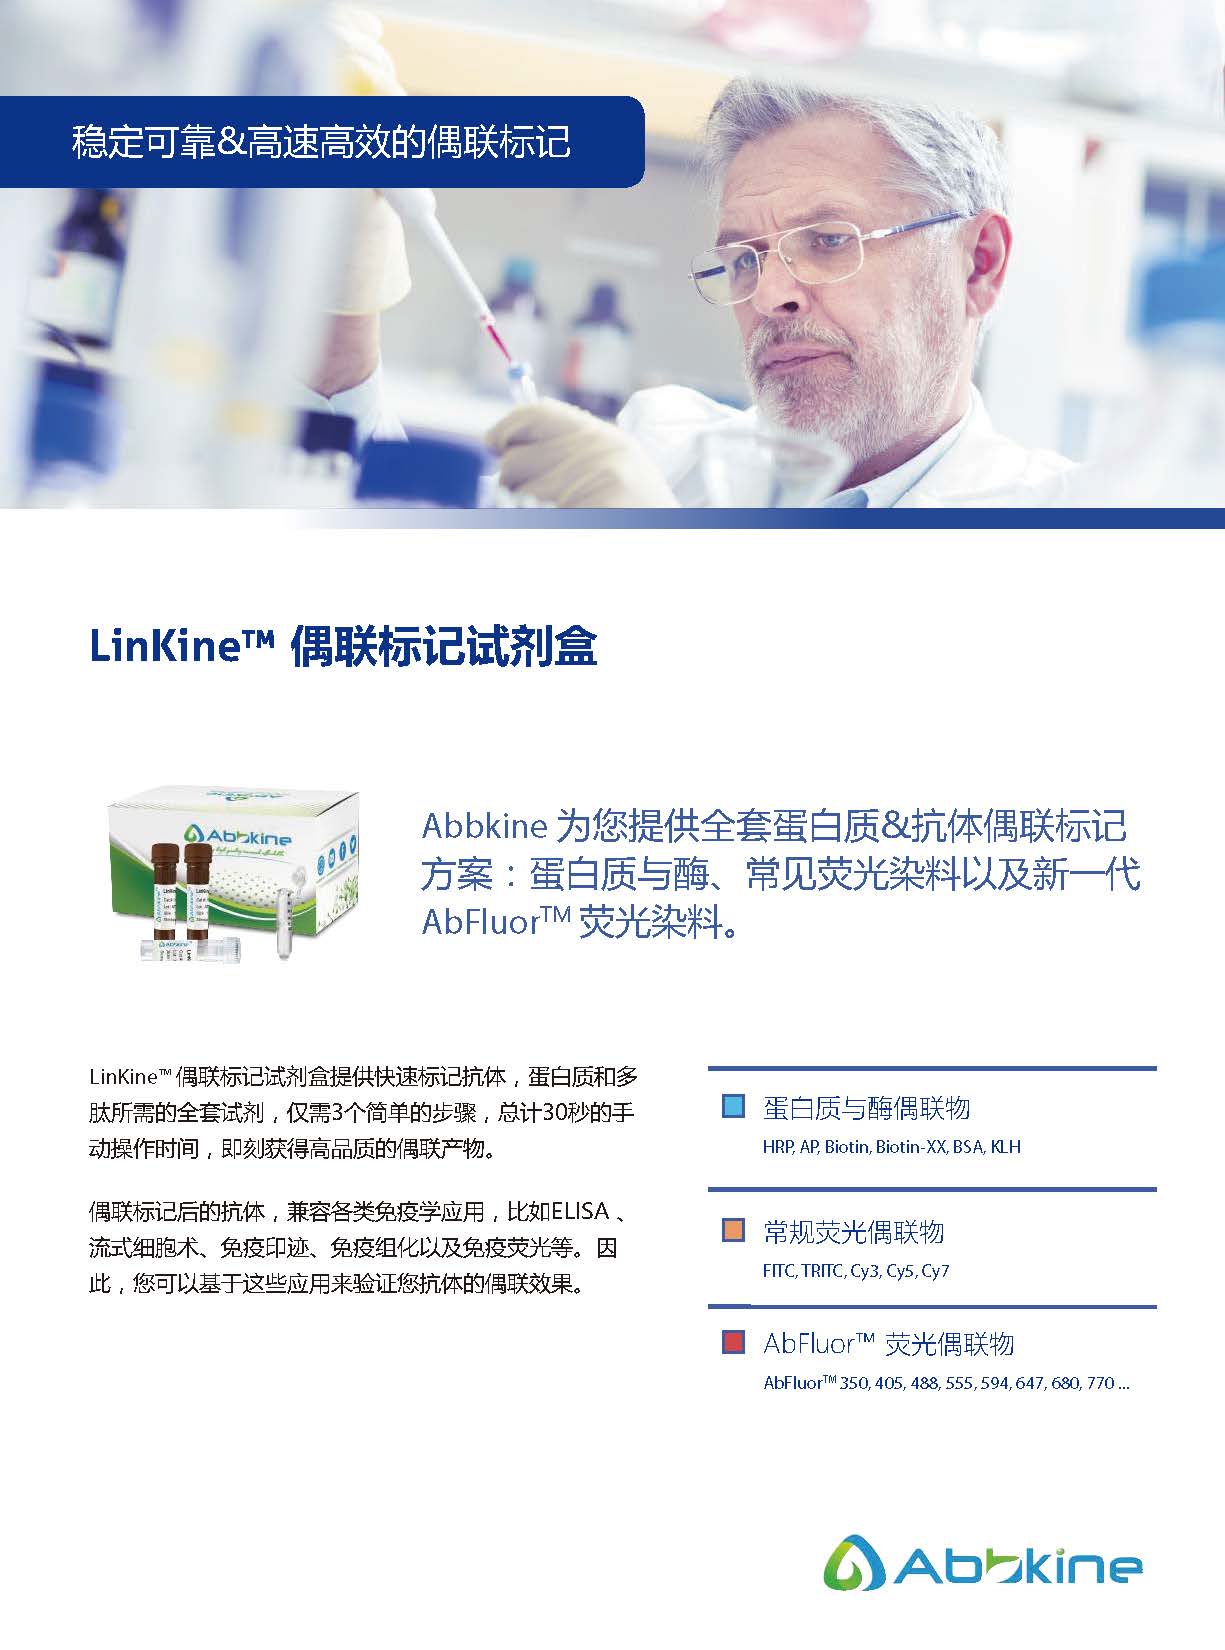 LinKine-labeling-kit1.jpg